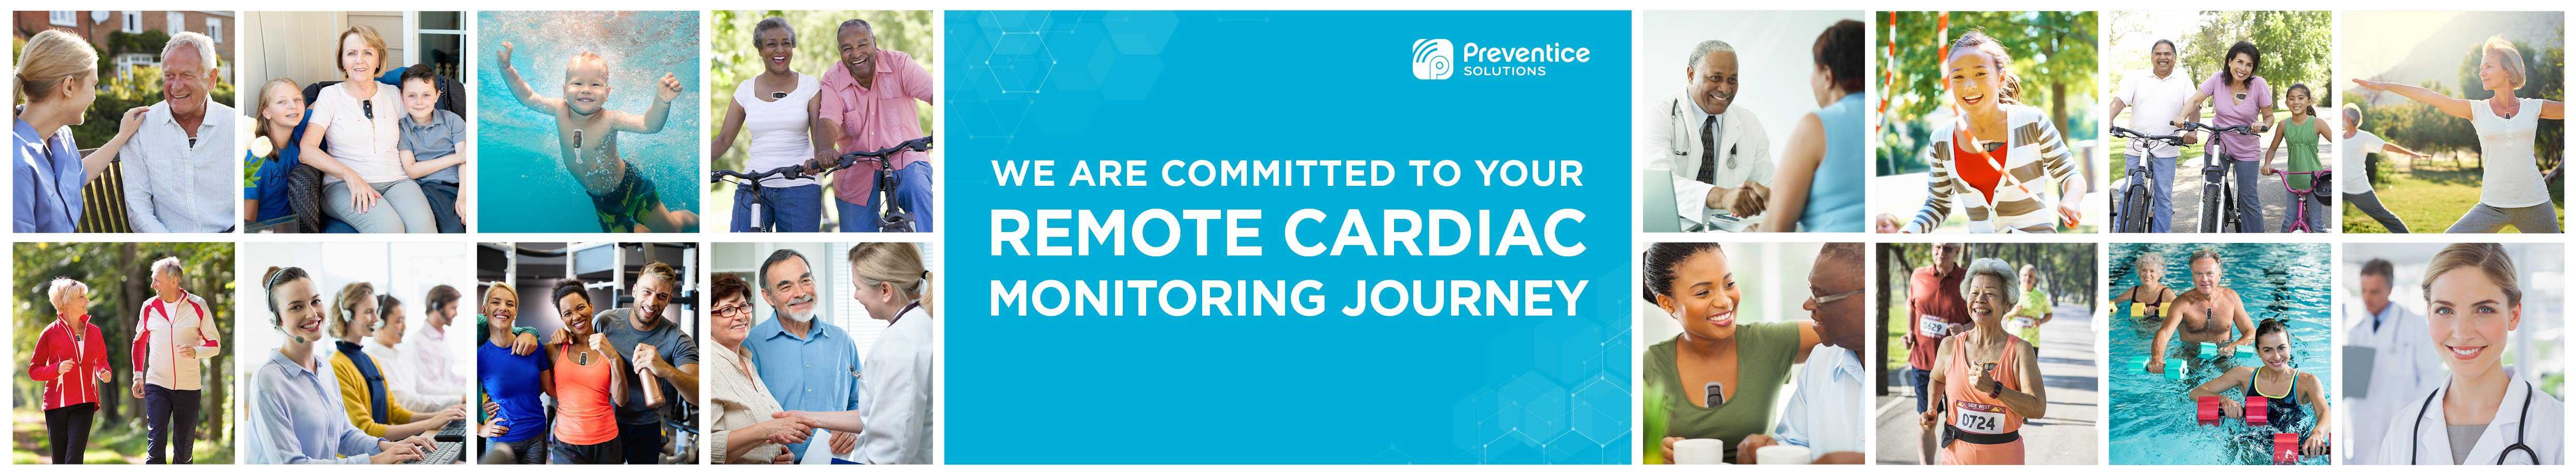 Boston Scientific Acquires Remote Cardiac Monitoring Company Preventice Solutions for $1.2B